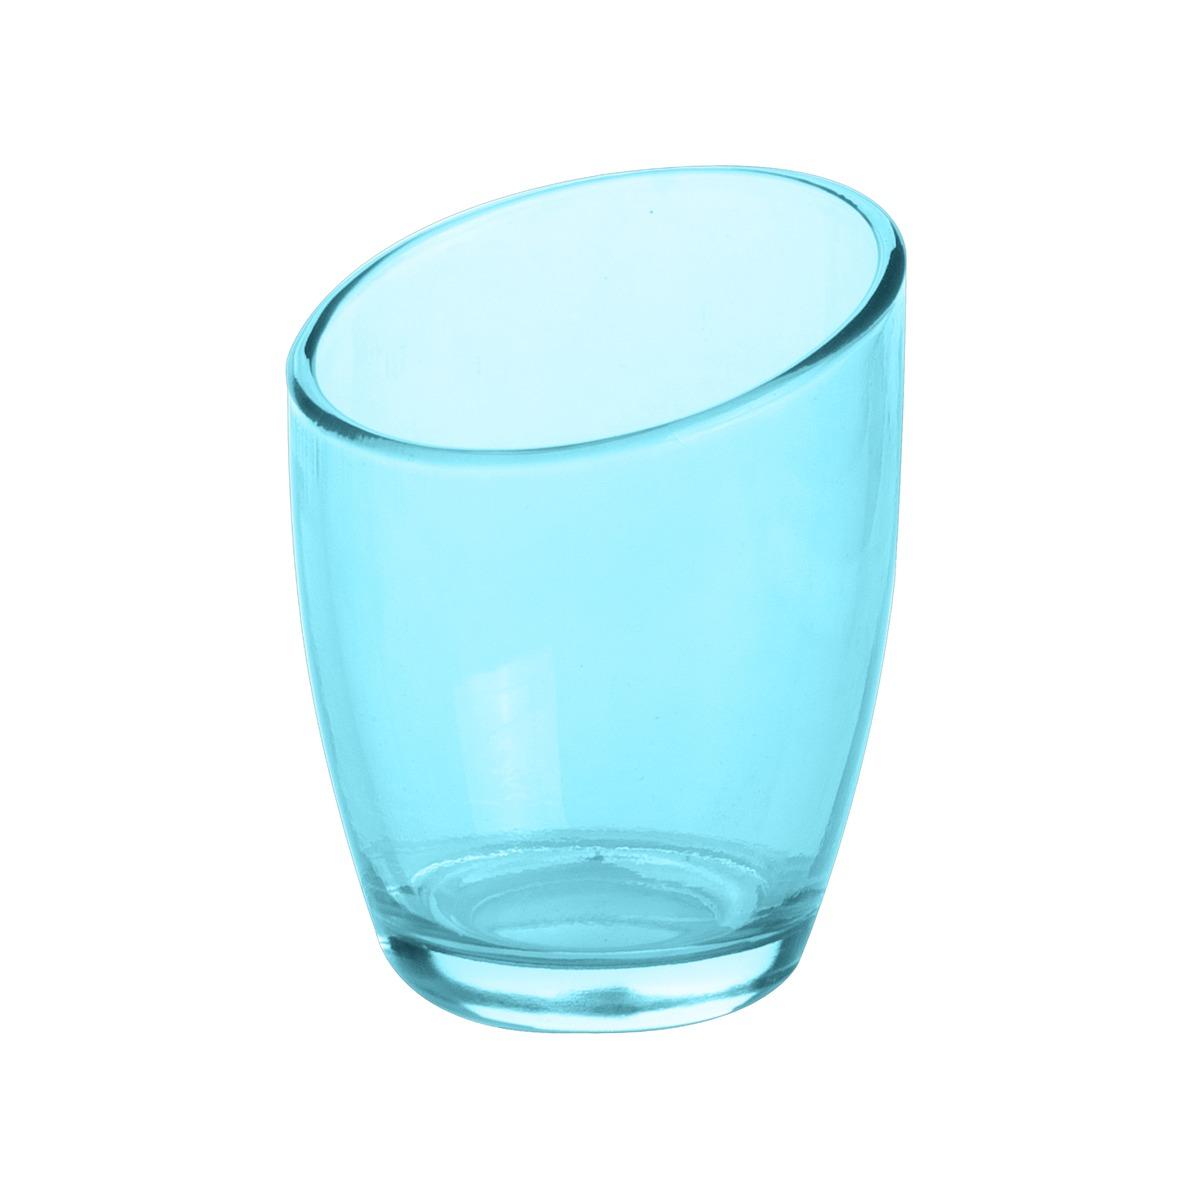 Photophore en verre - Diamètre 6,5 cm - Hauteur 8,8 cm - Bleu